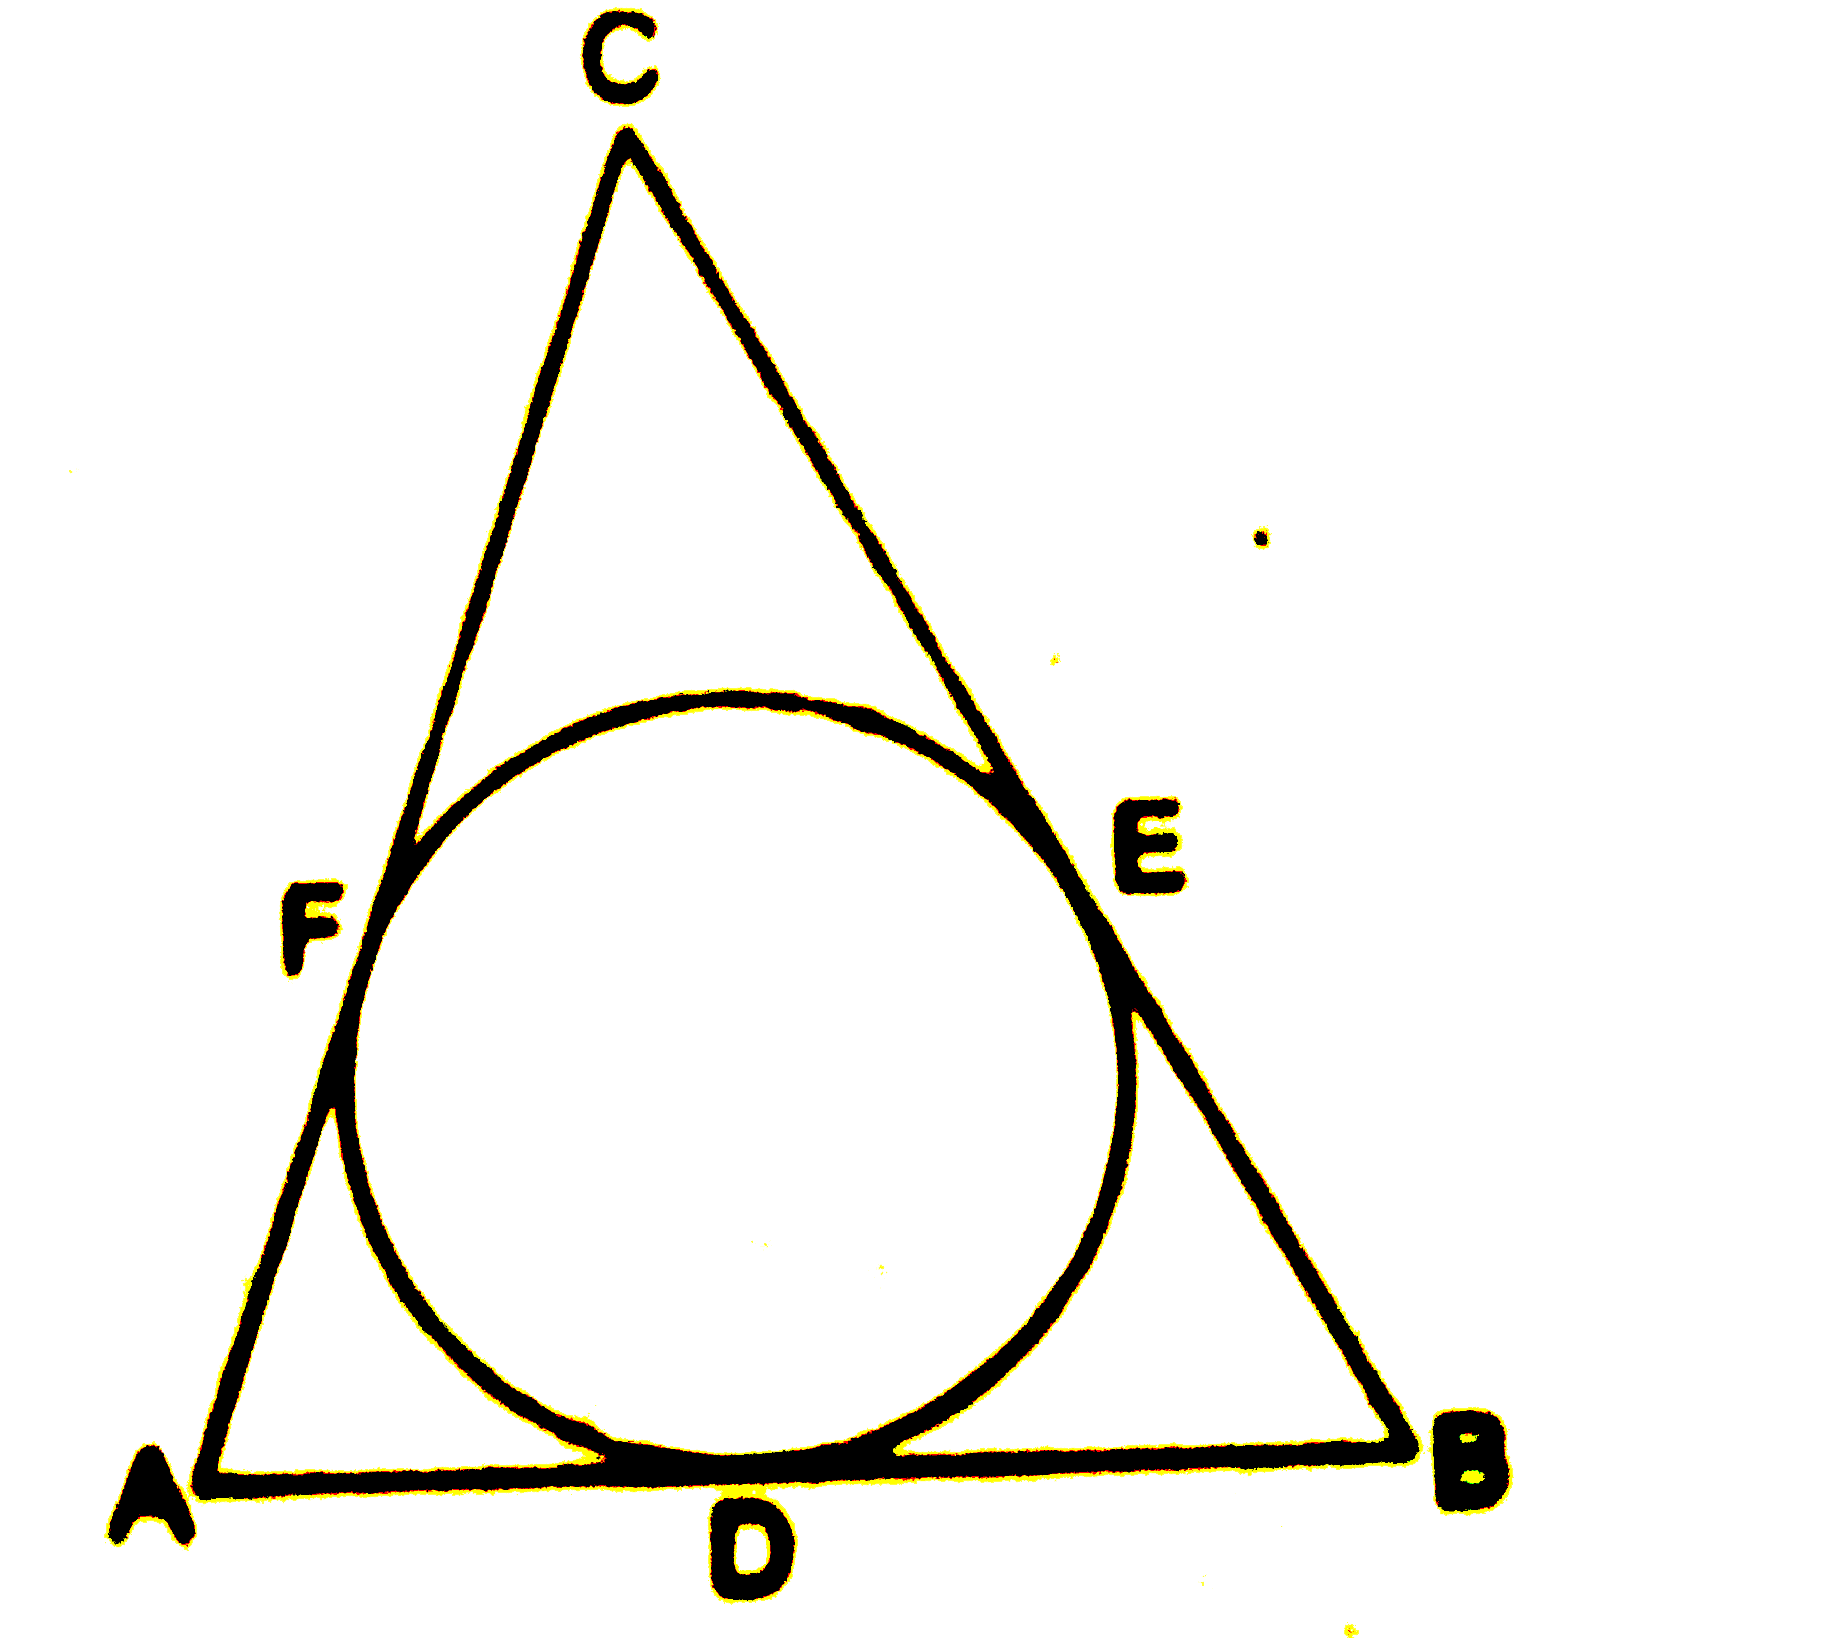 आकृति में, एक DeltaABC के अन्तर्गत एक वृत्त हैं जो त्रिभुज कि भुजाओं AB, BC तथा CA को क्रमशः बिन्दुओं D, E तथा F पर स्पर्श करता हैं। यदि AB, BC तथा CA  की लम्बाइयाँ क्रमशः 12 cm, 8 cm तथा 10 cm हैं, तो AD, BE तथा CF की लम्बाइयाँ ज्ञात कीजिए।